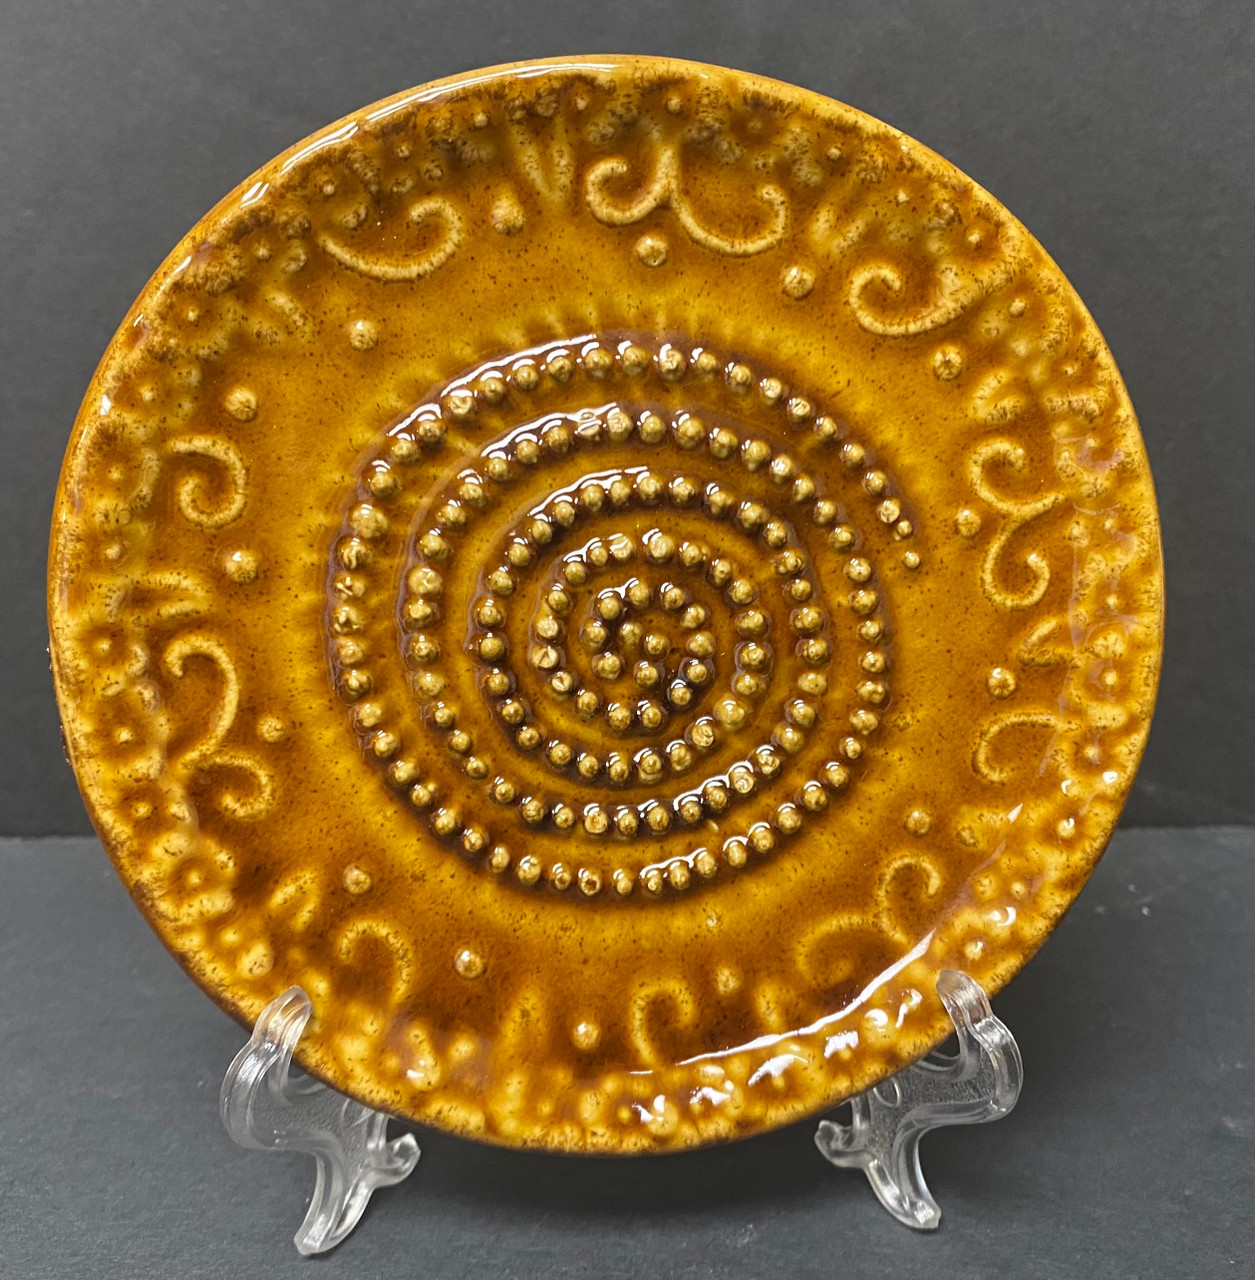 Wheel Thrown Stoneware Garlic Grater Bowl Dish Coral Yellow